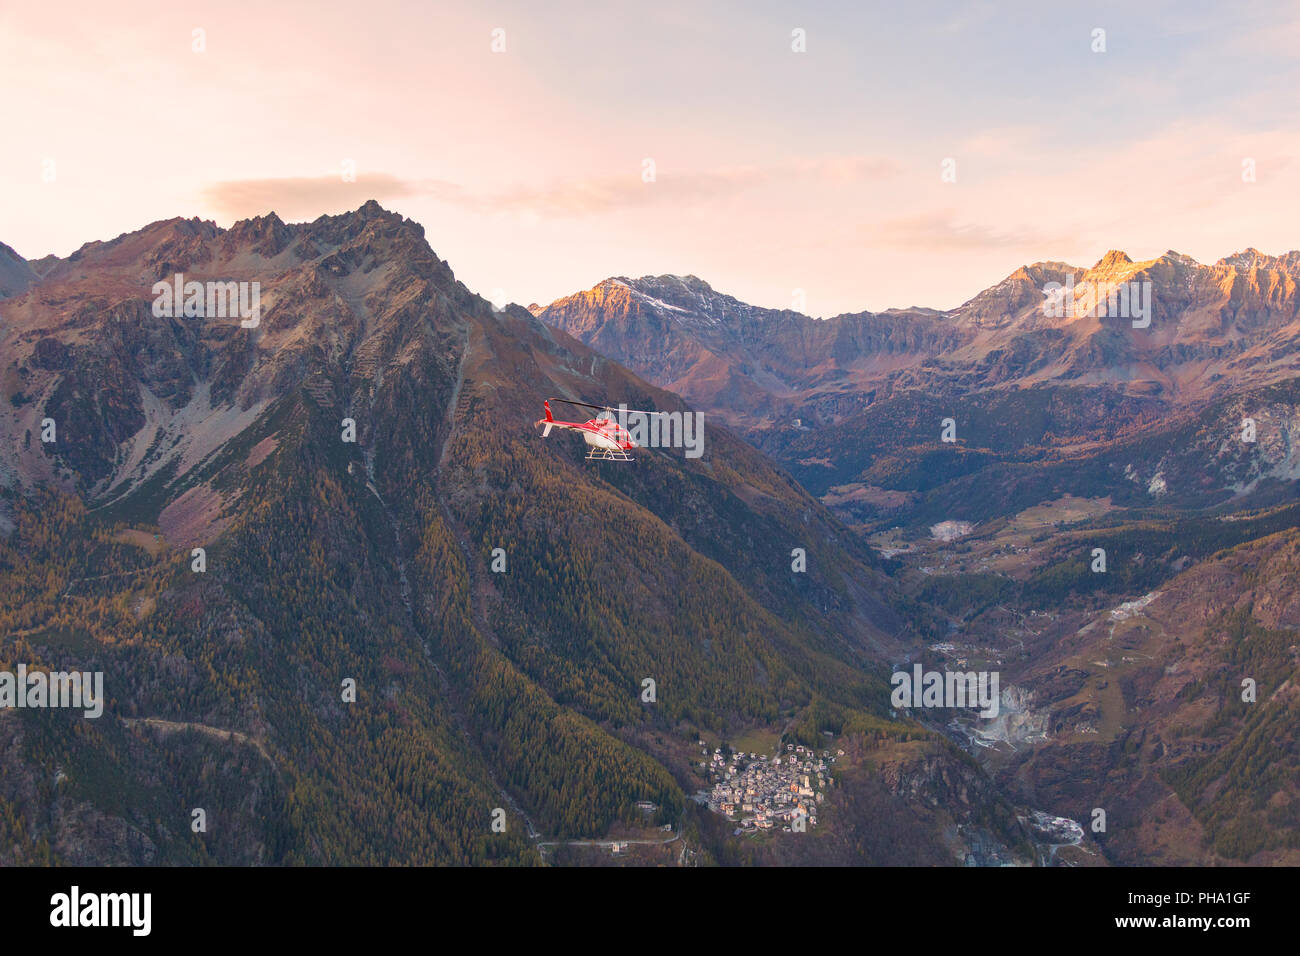 Vue aérienne d'hélicoptère en vol au dessus de Primolo, Valtournenche, Valtellina, Lombardie, province de Sondrio, Italie, Europe Banque D'Images